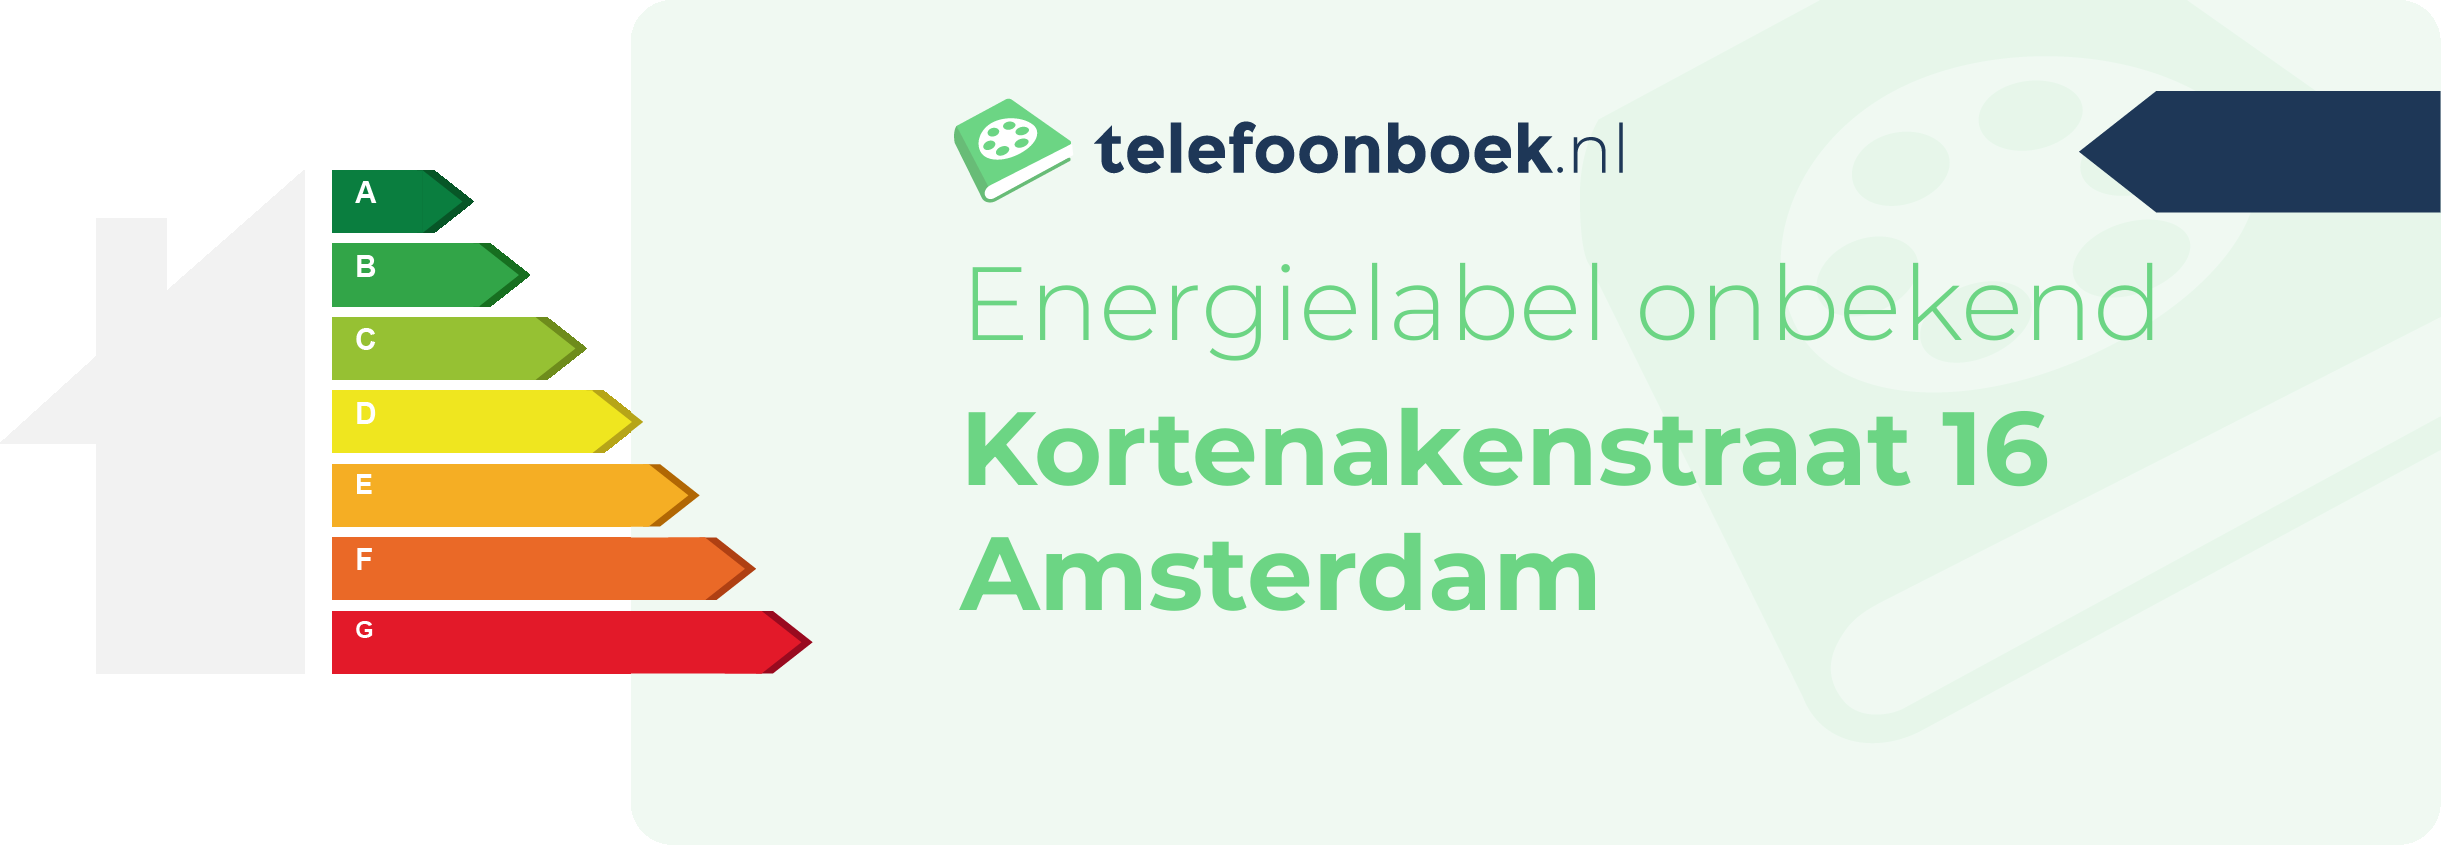 Energielabel Kortenakenstraat 16 Amsterdam